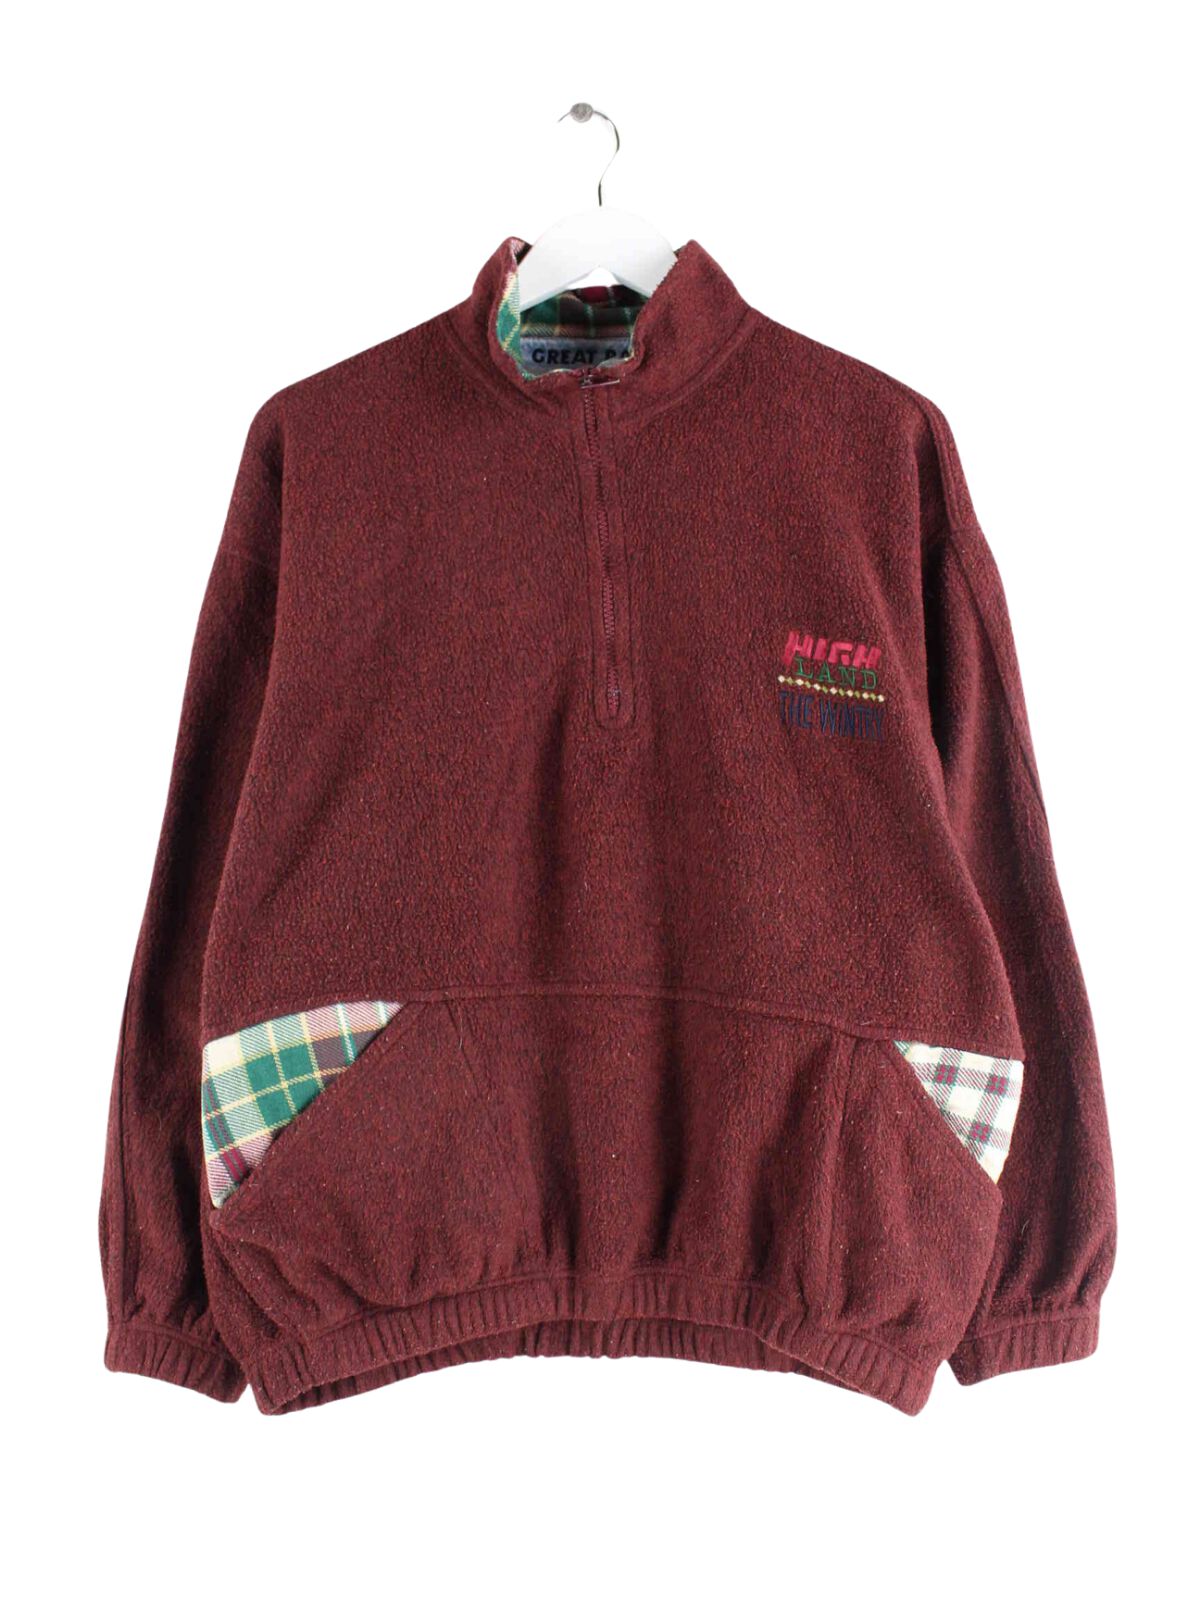 Vintage 90s Fleece Half Zip Sweater Rot S (front image)